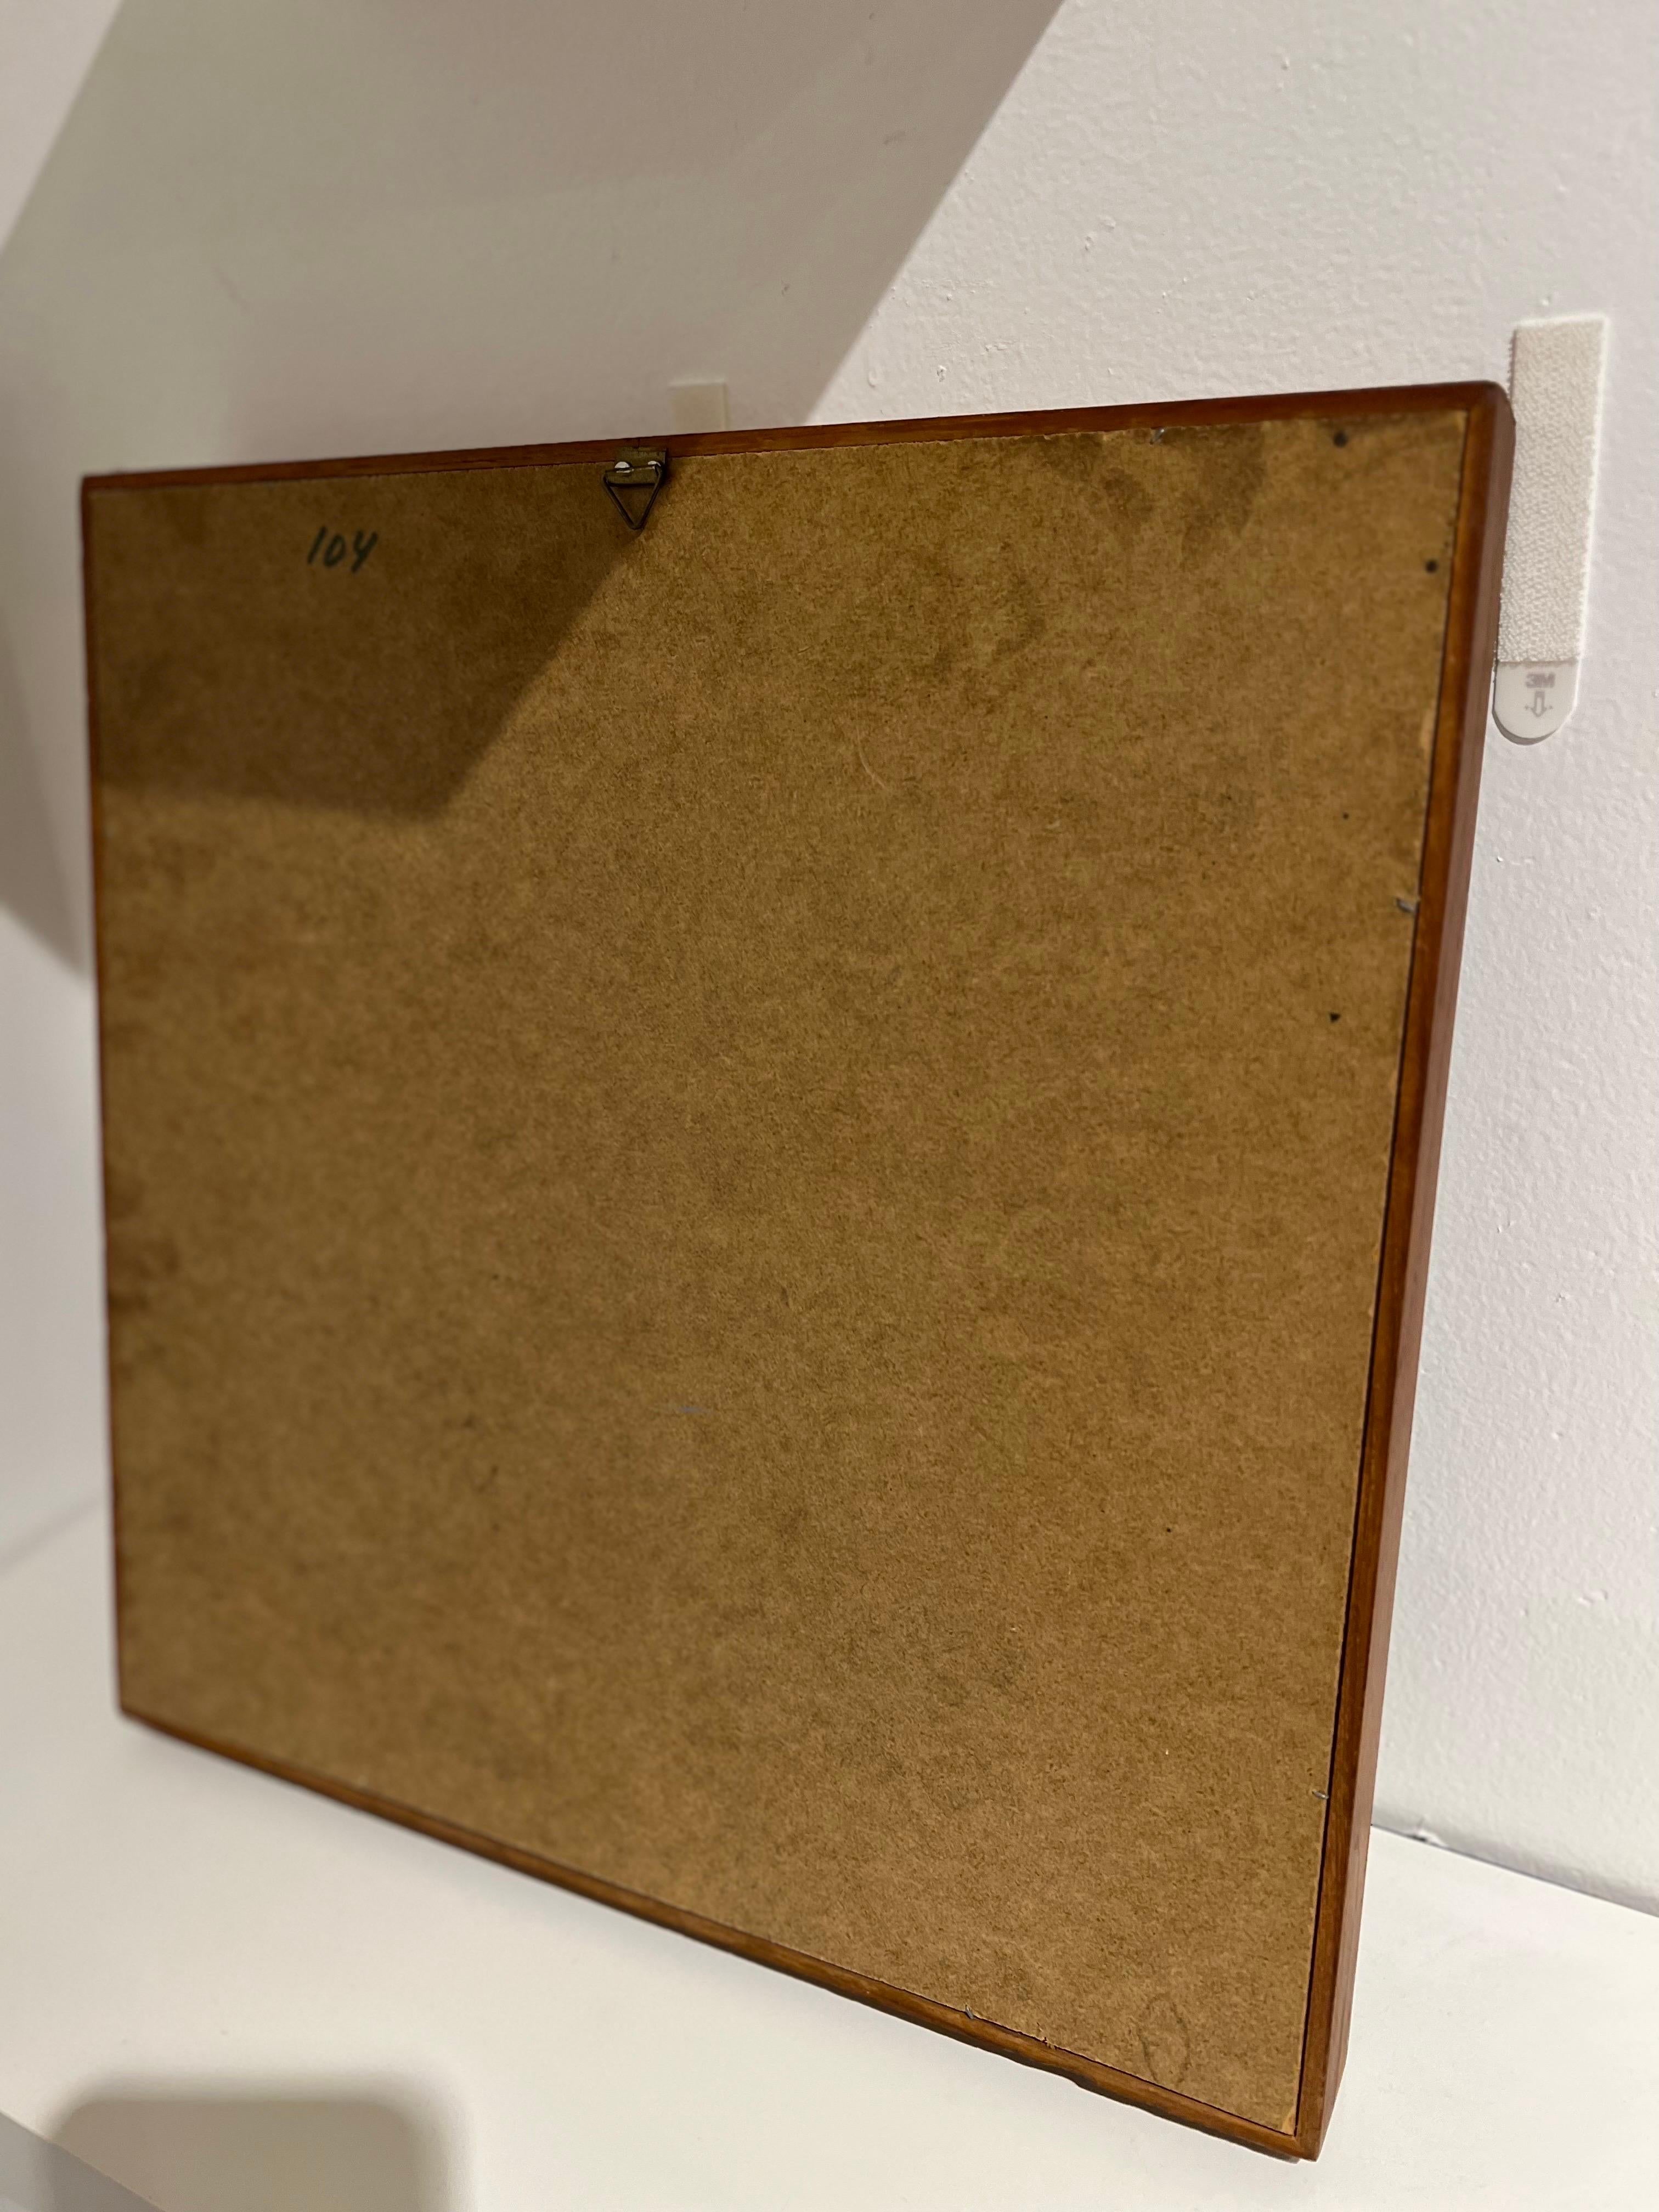 20th Century Danish Modern Solid Teak Frame Mirror Attributed to Pedersen & Hansen For Sale